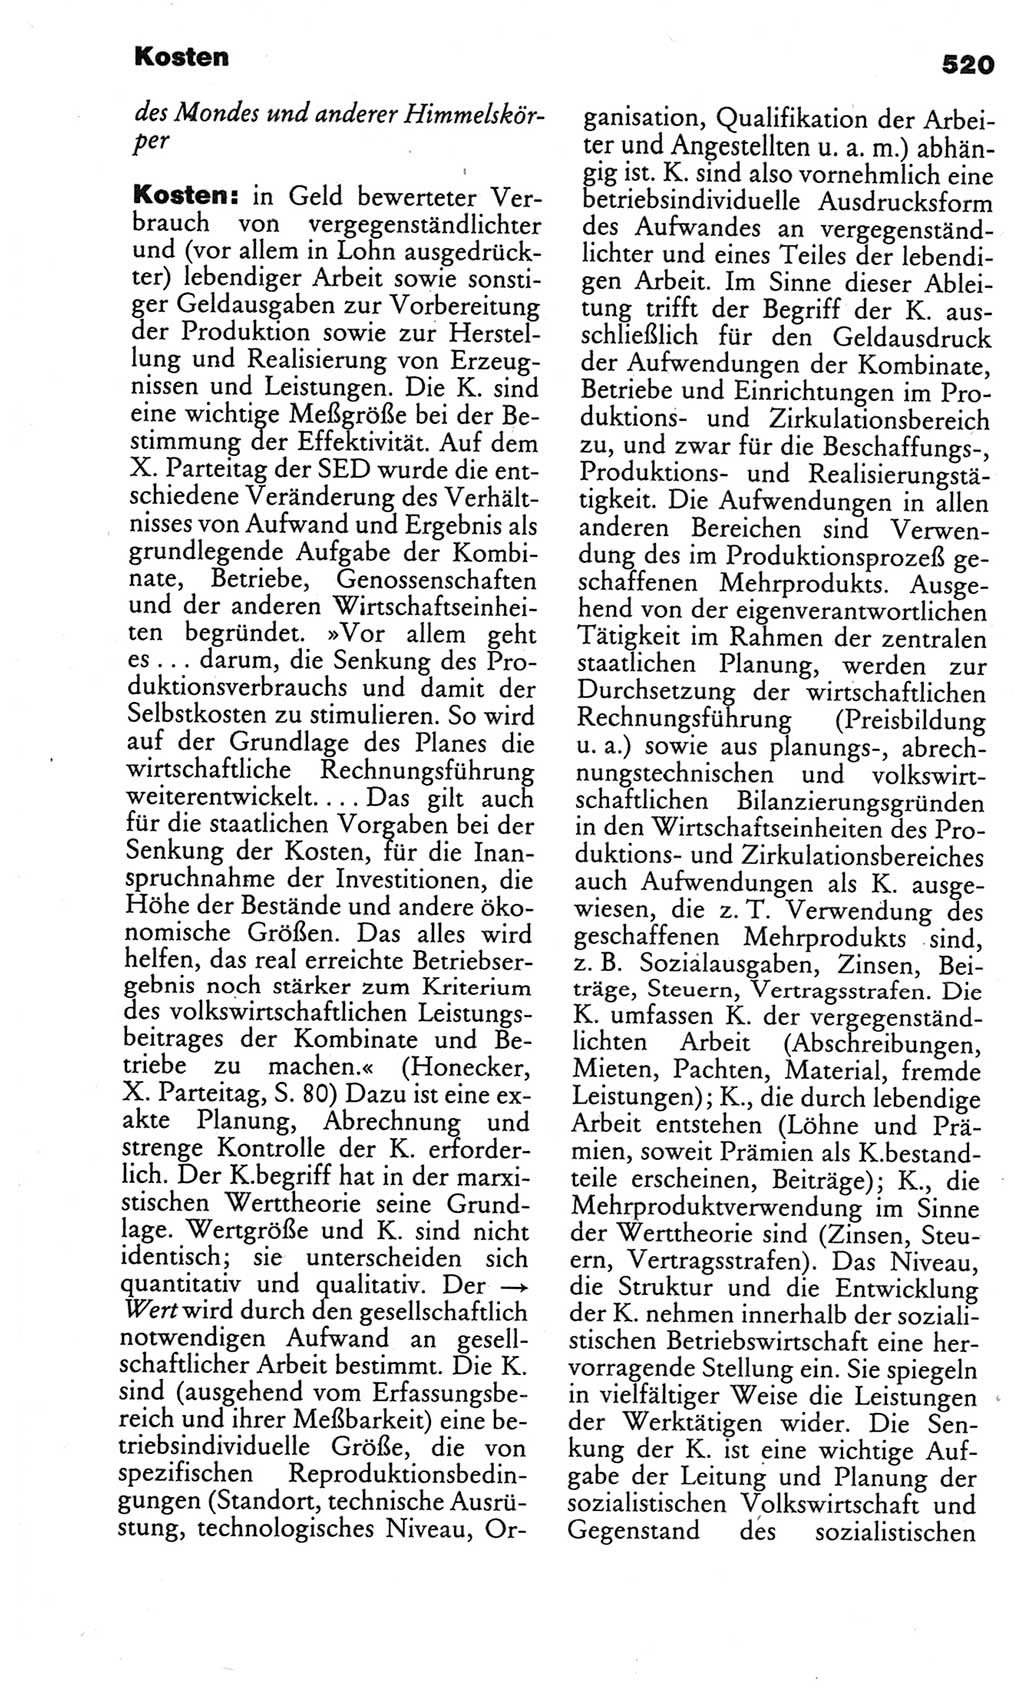 Kleines politisches Wörterbuch [Deutsche Demokratische Republik (DDR)] 1986, Seite 520 (Kl. pol. Wb. DDR 1986, S. 520)